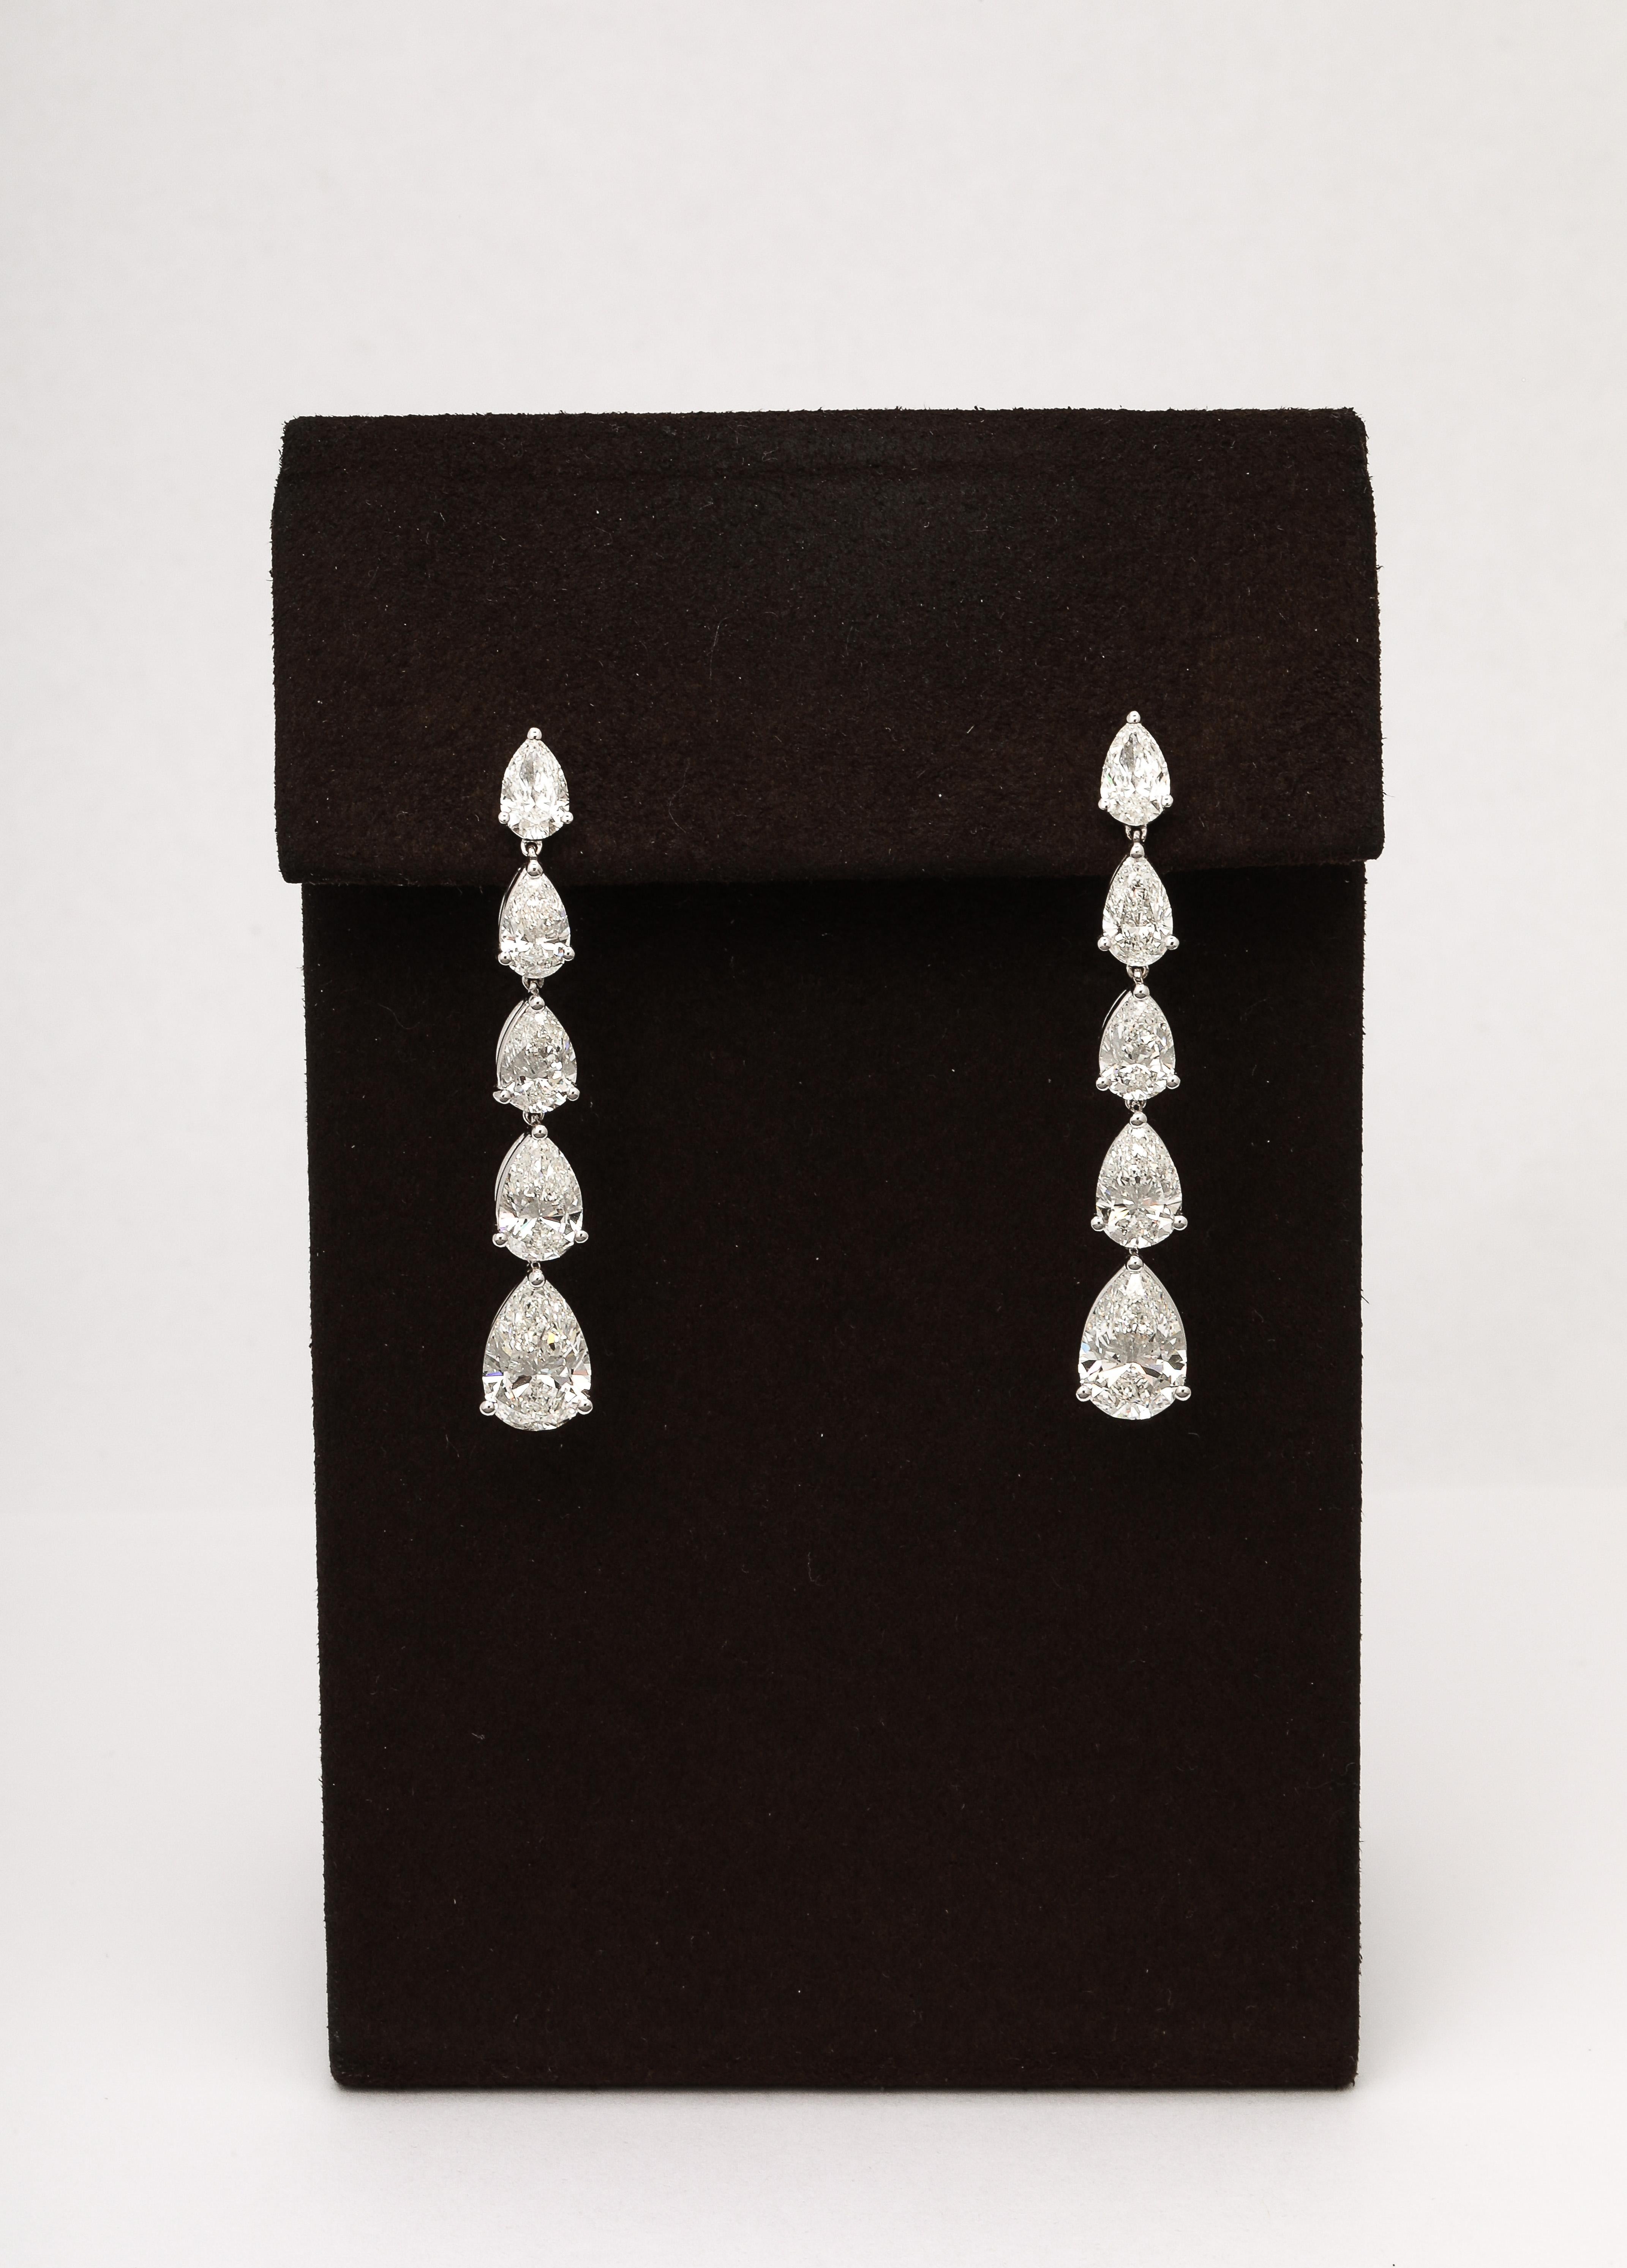 
Magnifiques boucles d'oreilles pendantes en forme de poire et diamant. 

9,51 carats de diamants blancs en forme de poire sertis dans de l'or blanc 18k. Les poires vont d'un demi carat à 2 carats. 

Longueur de 1,75 pouce. 

Un design portable et